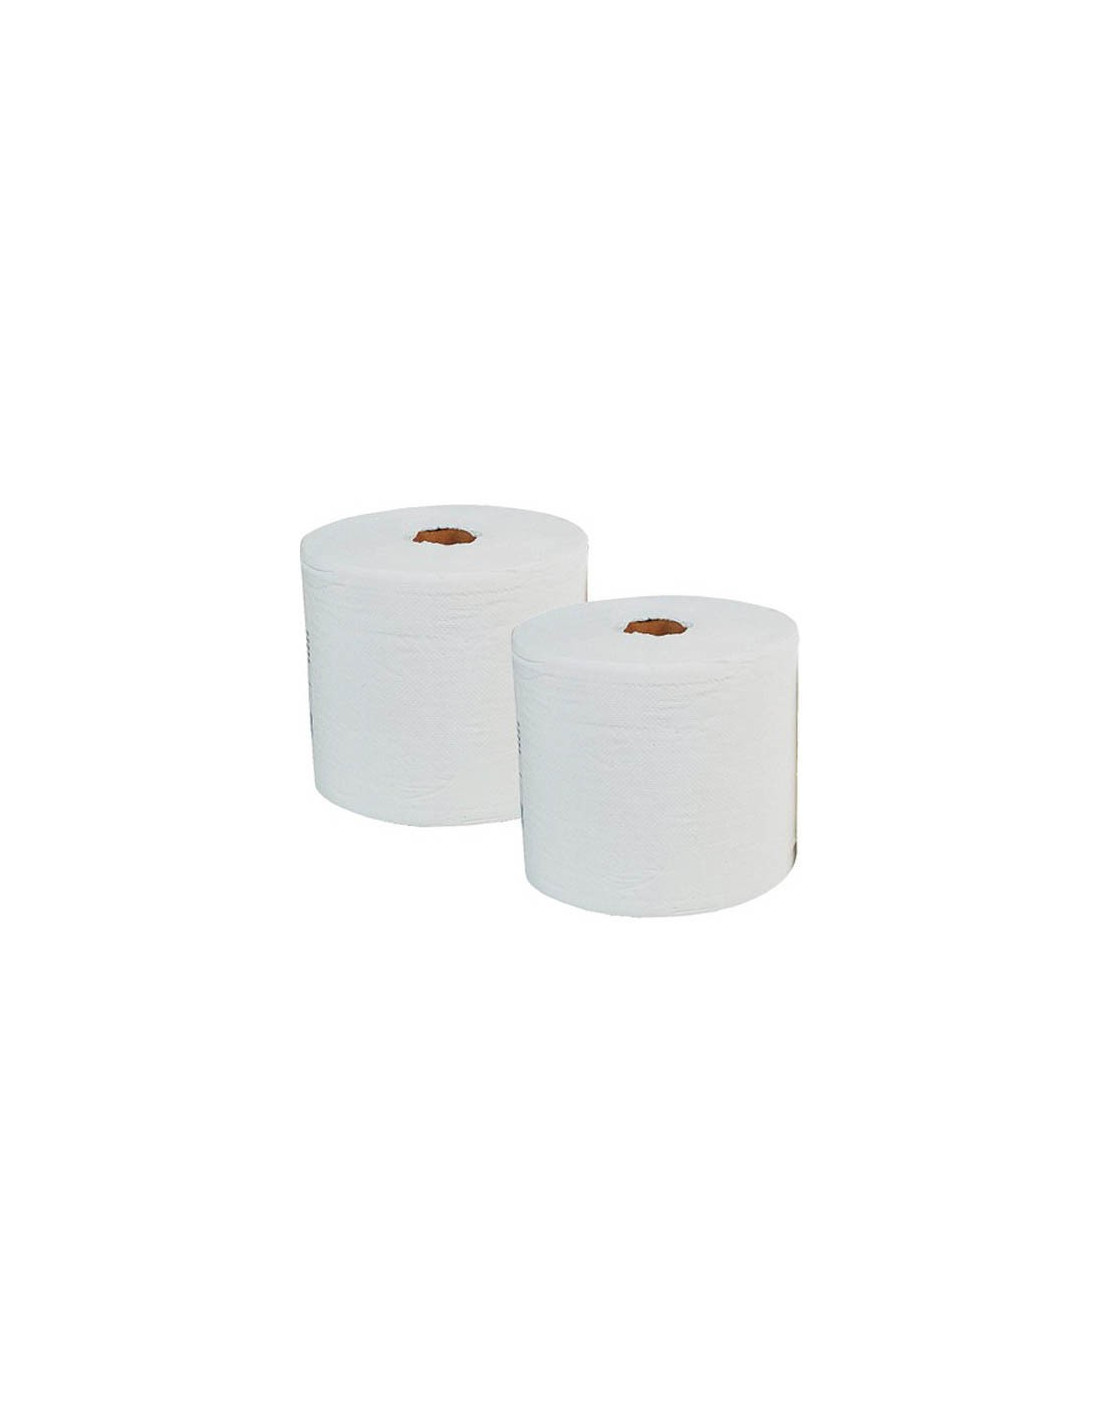 Bobines Essuie-tout Industriel Blanc 1000 feuilles x 2 unités